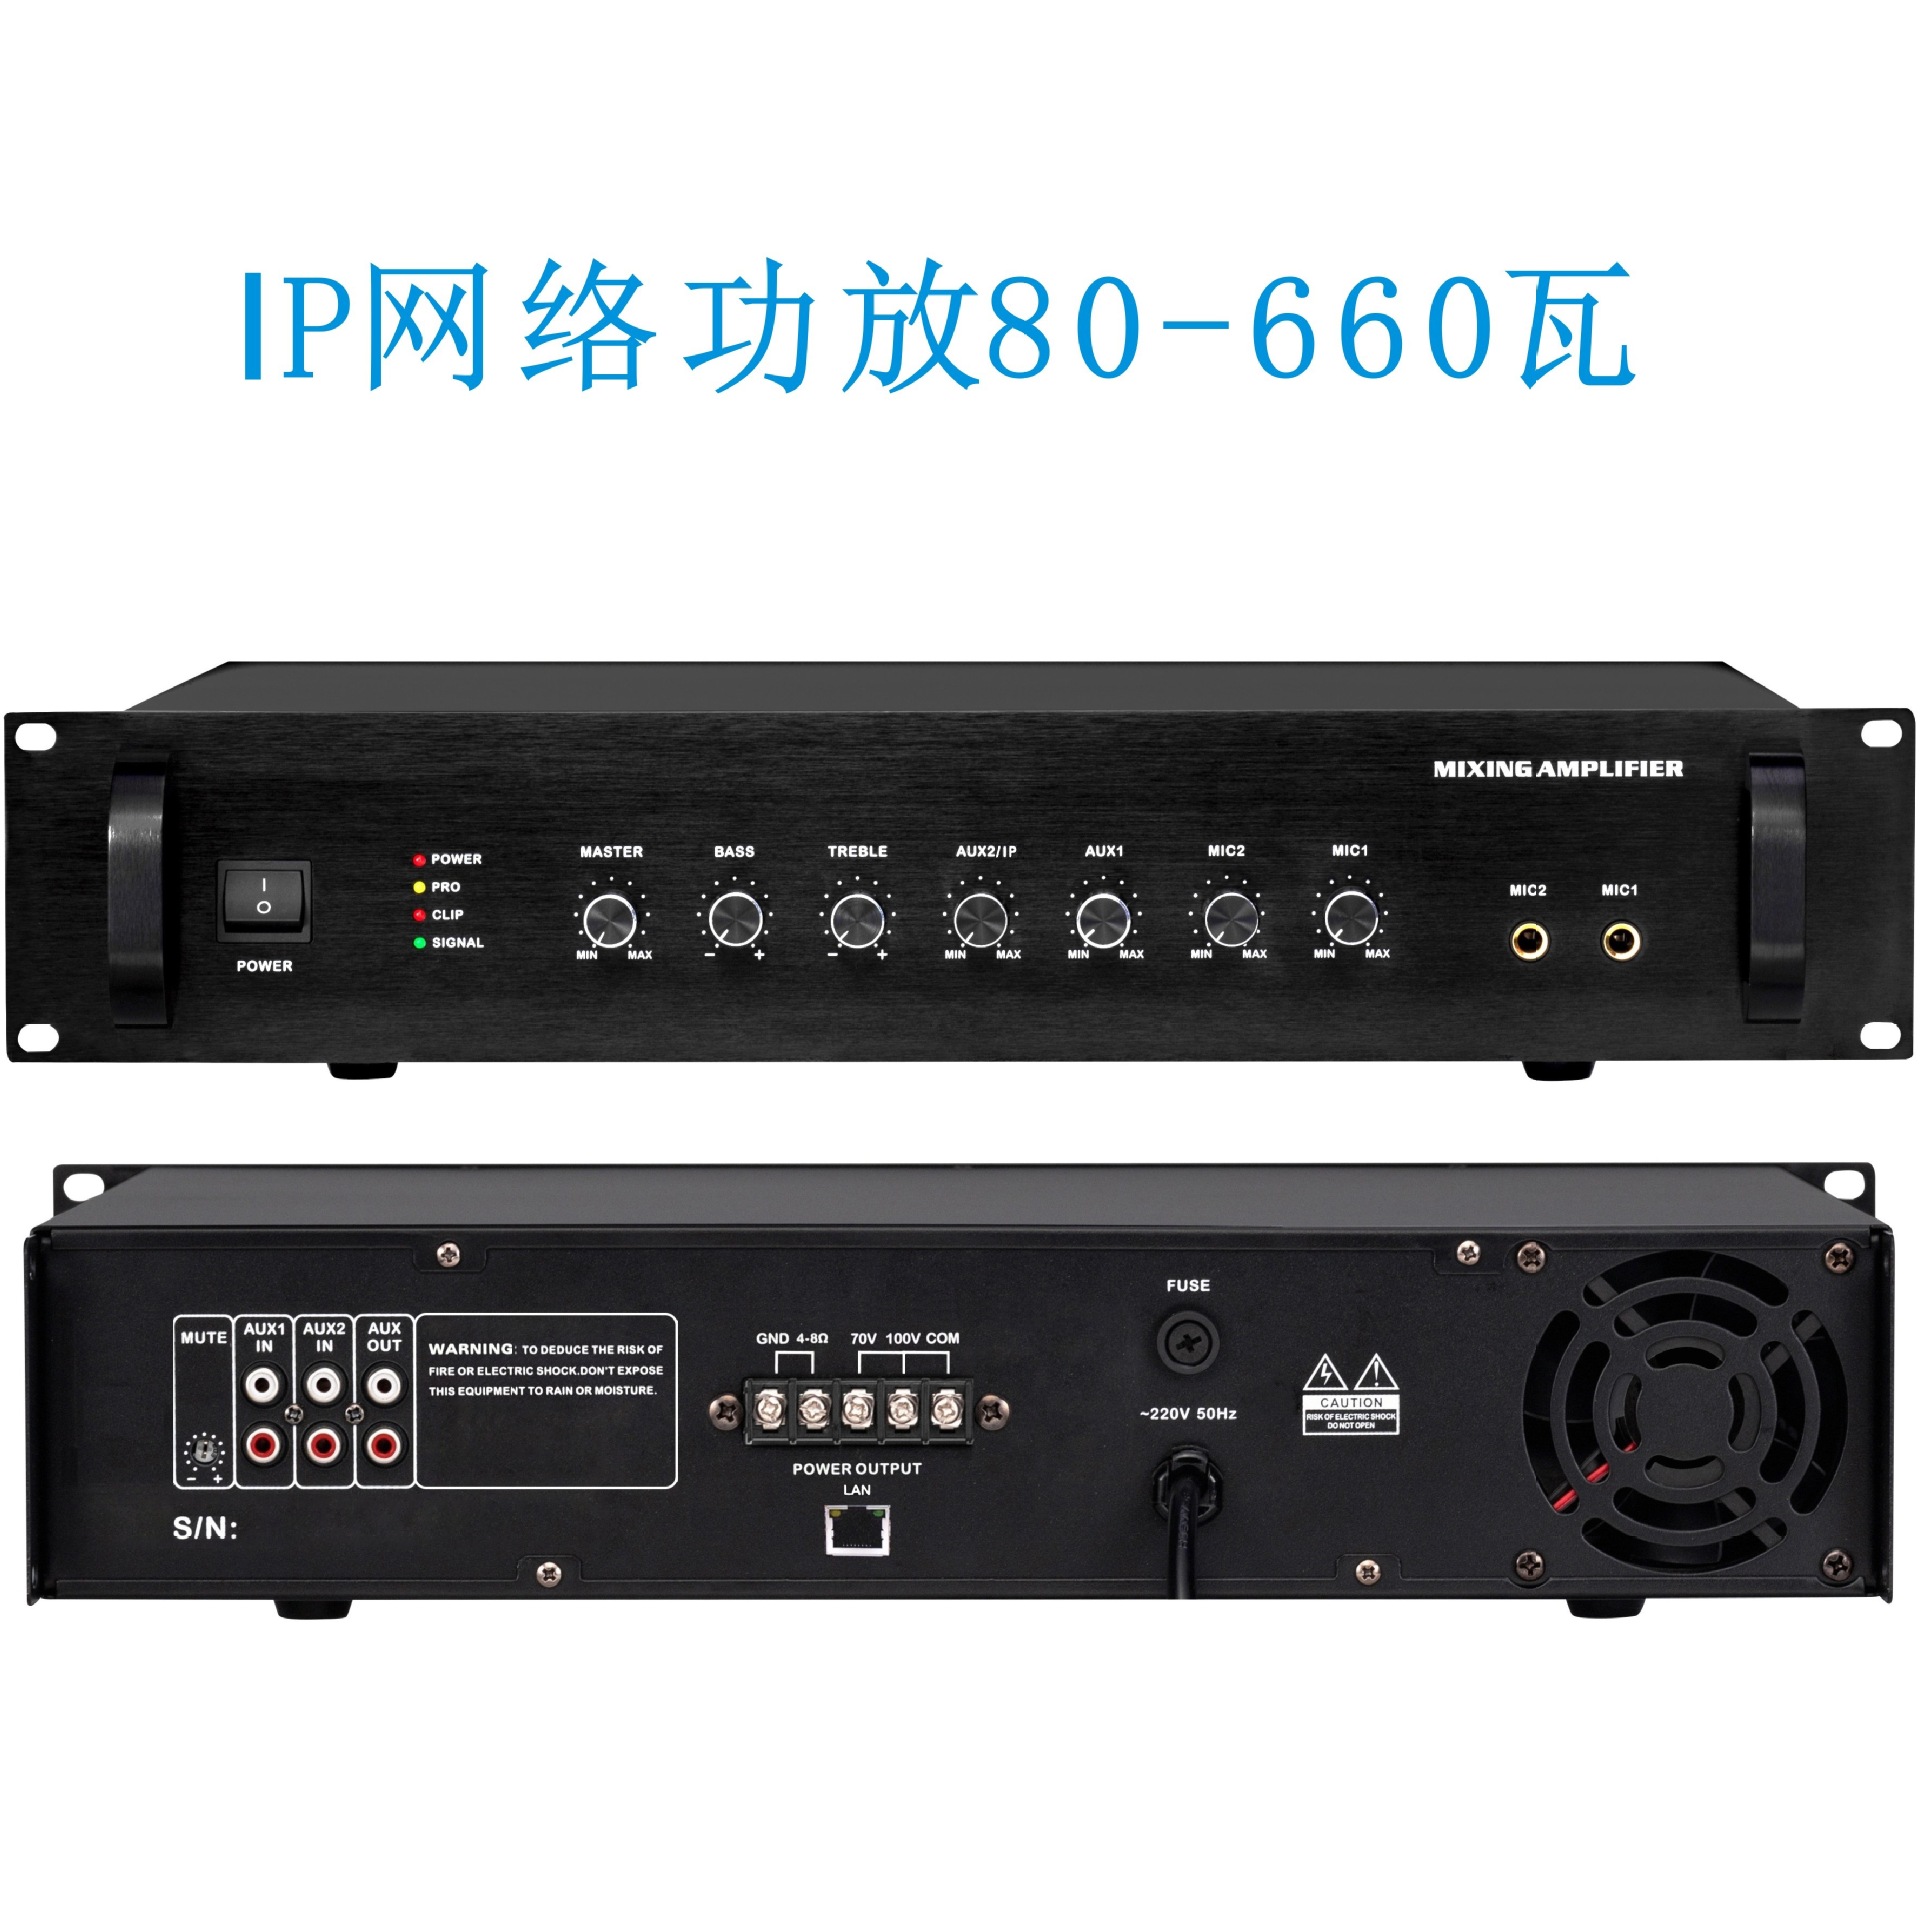 校园IP网络公共广播系统扩声定压功放500瓦SIP网络系统广播功放机